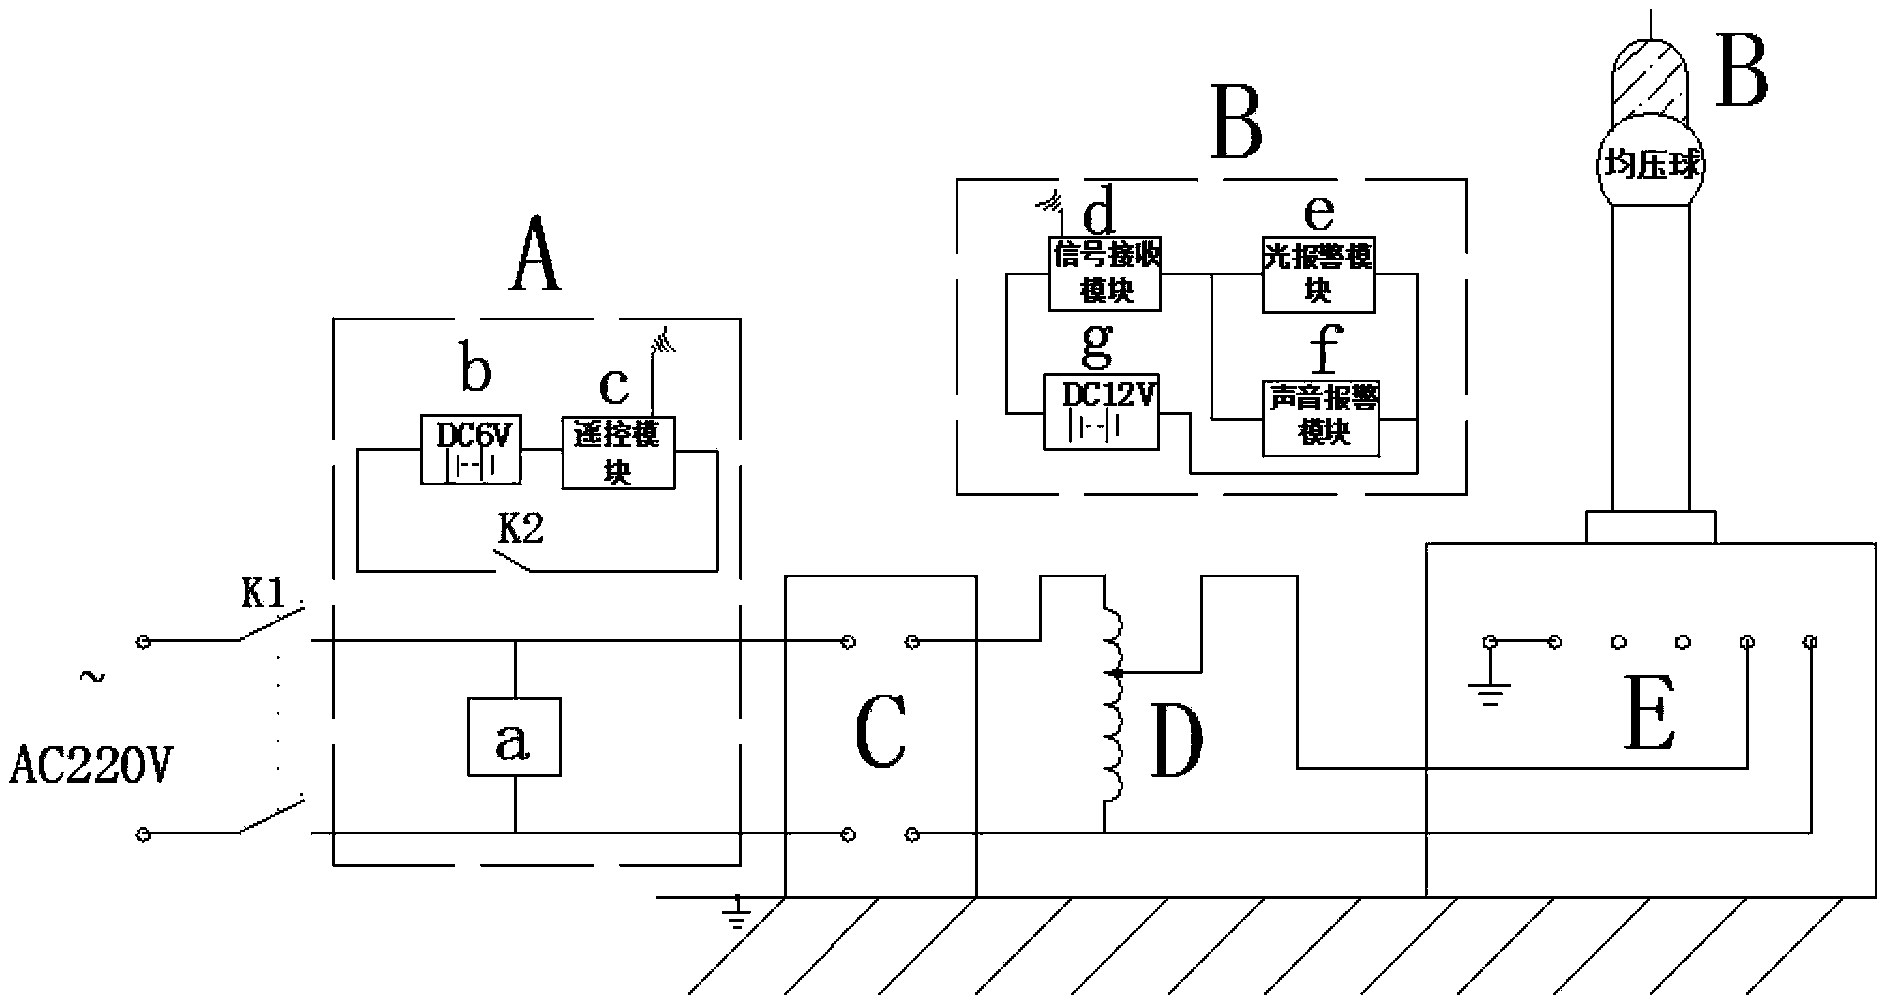 High-voltage test alarm